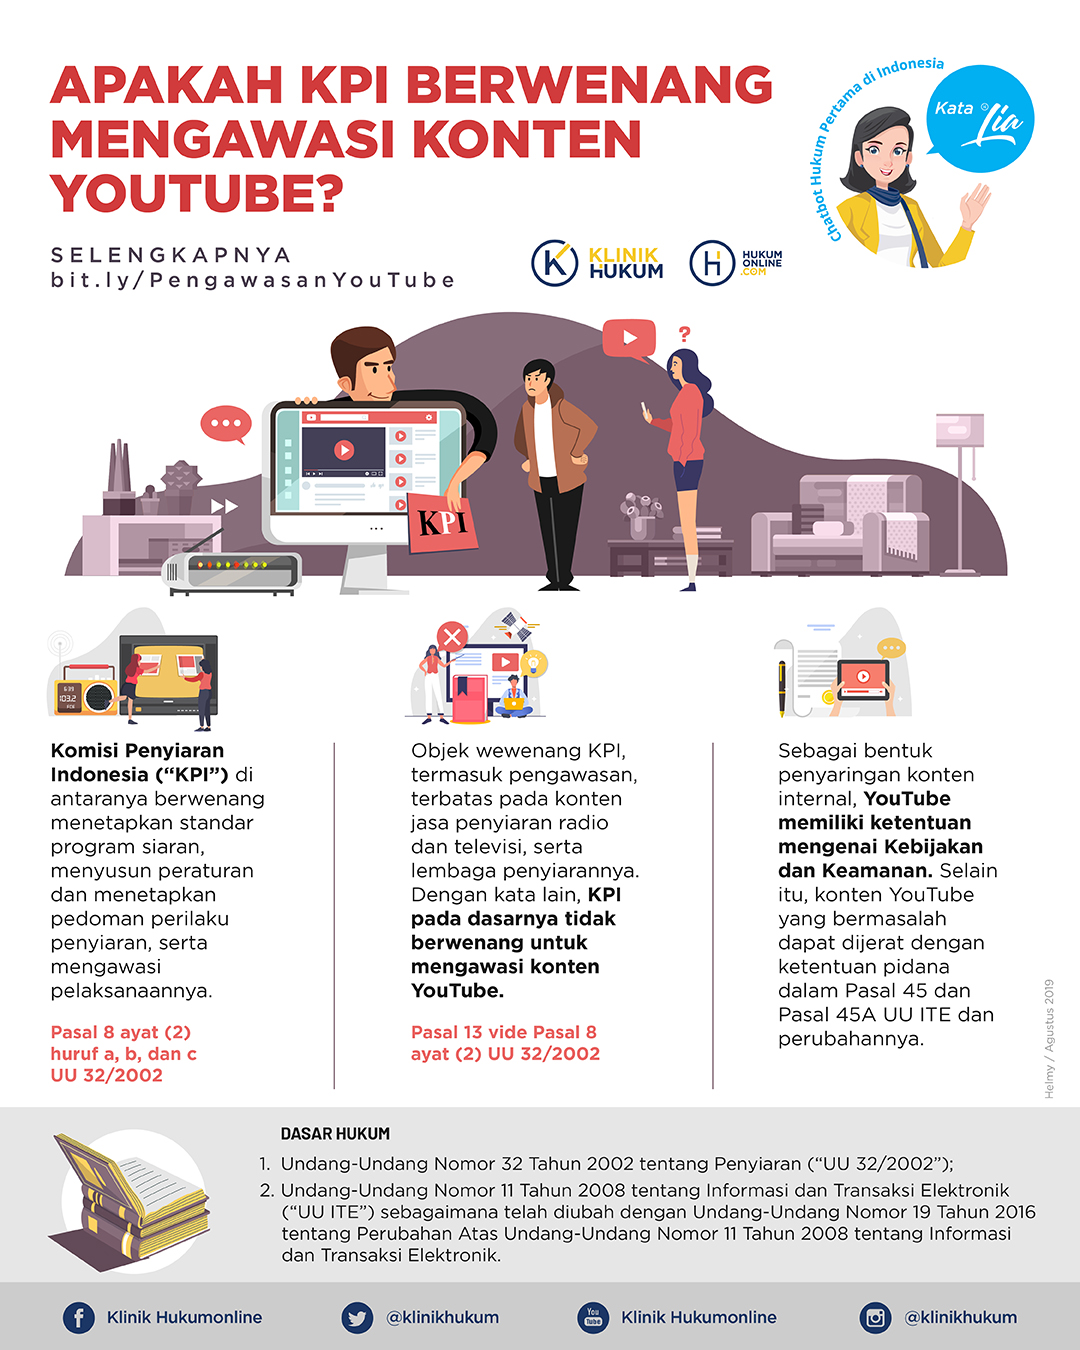 Apakah KPI Berwenang Mengawasi Konten YouTube?